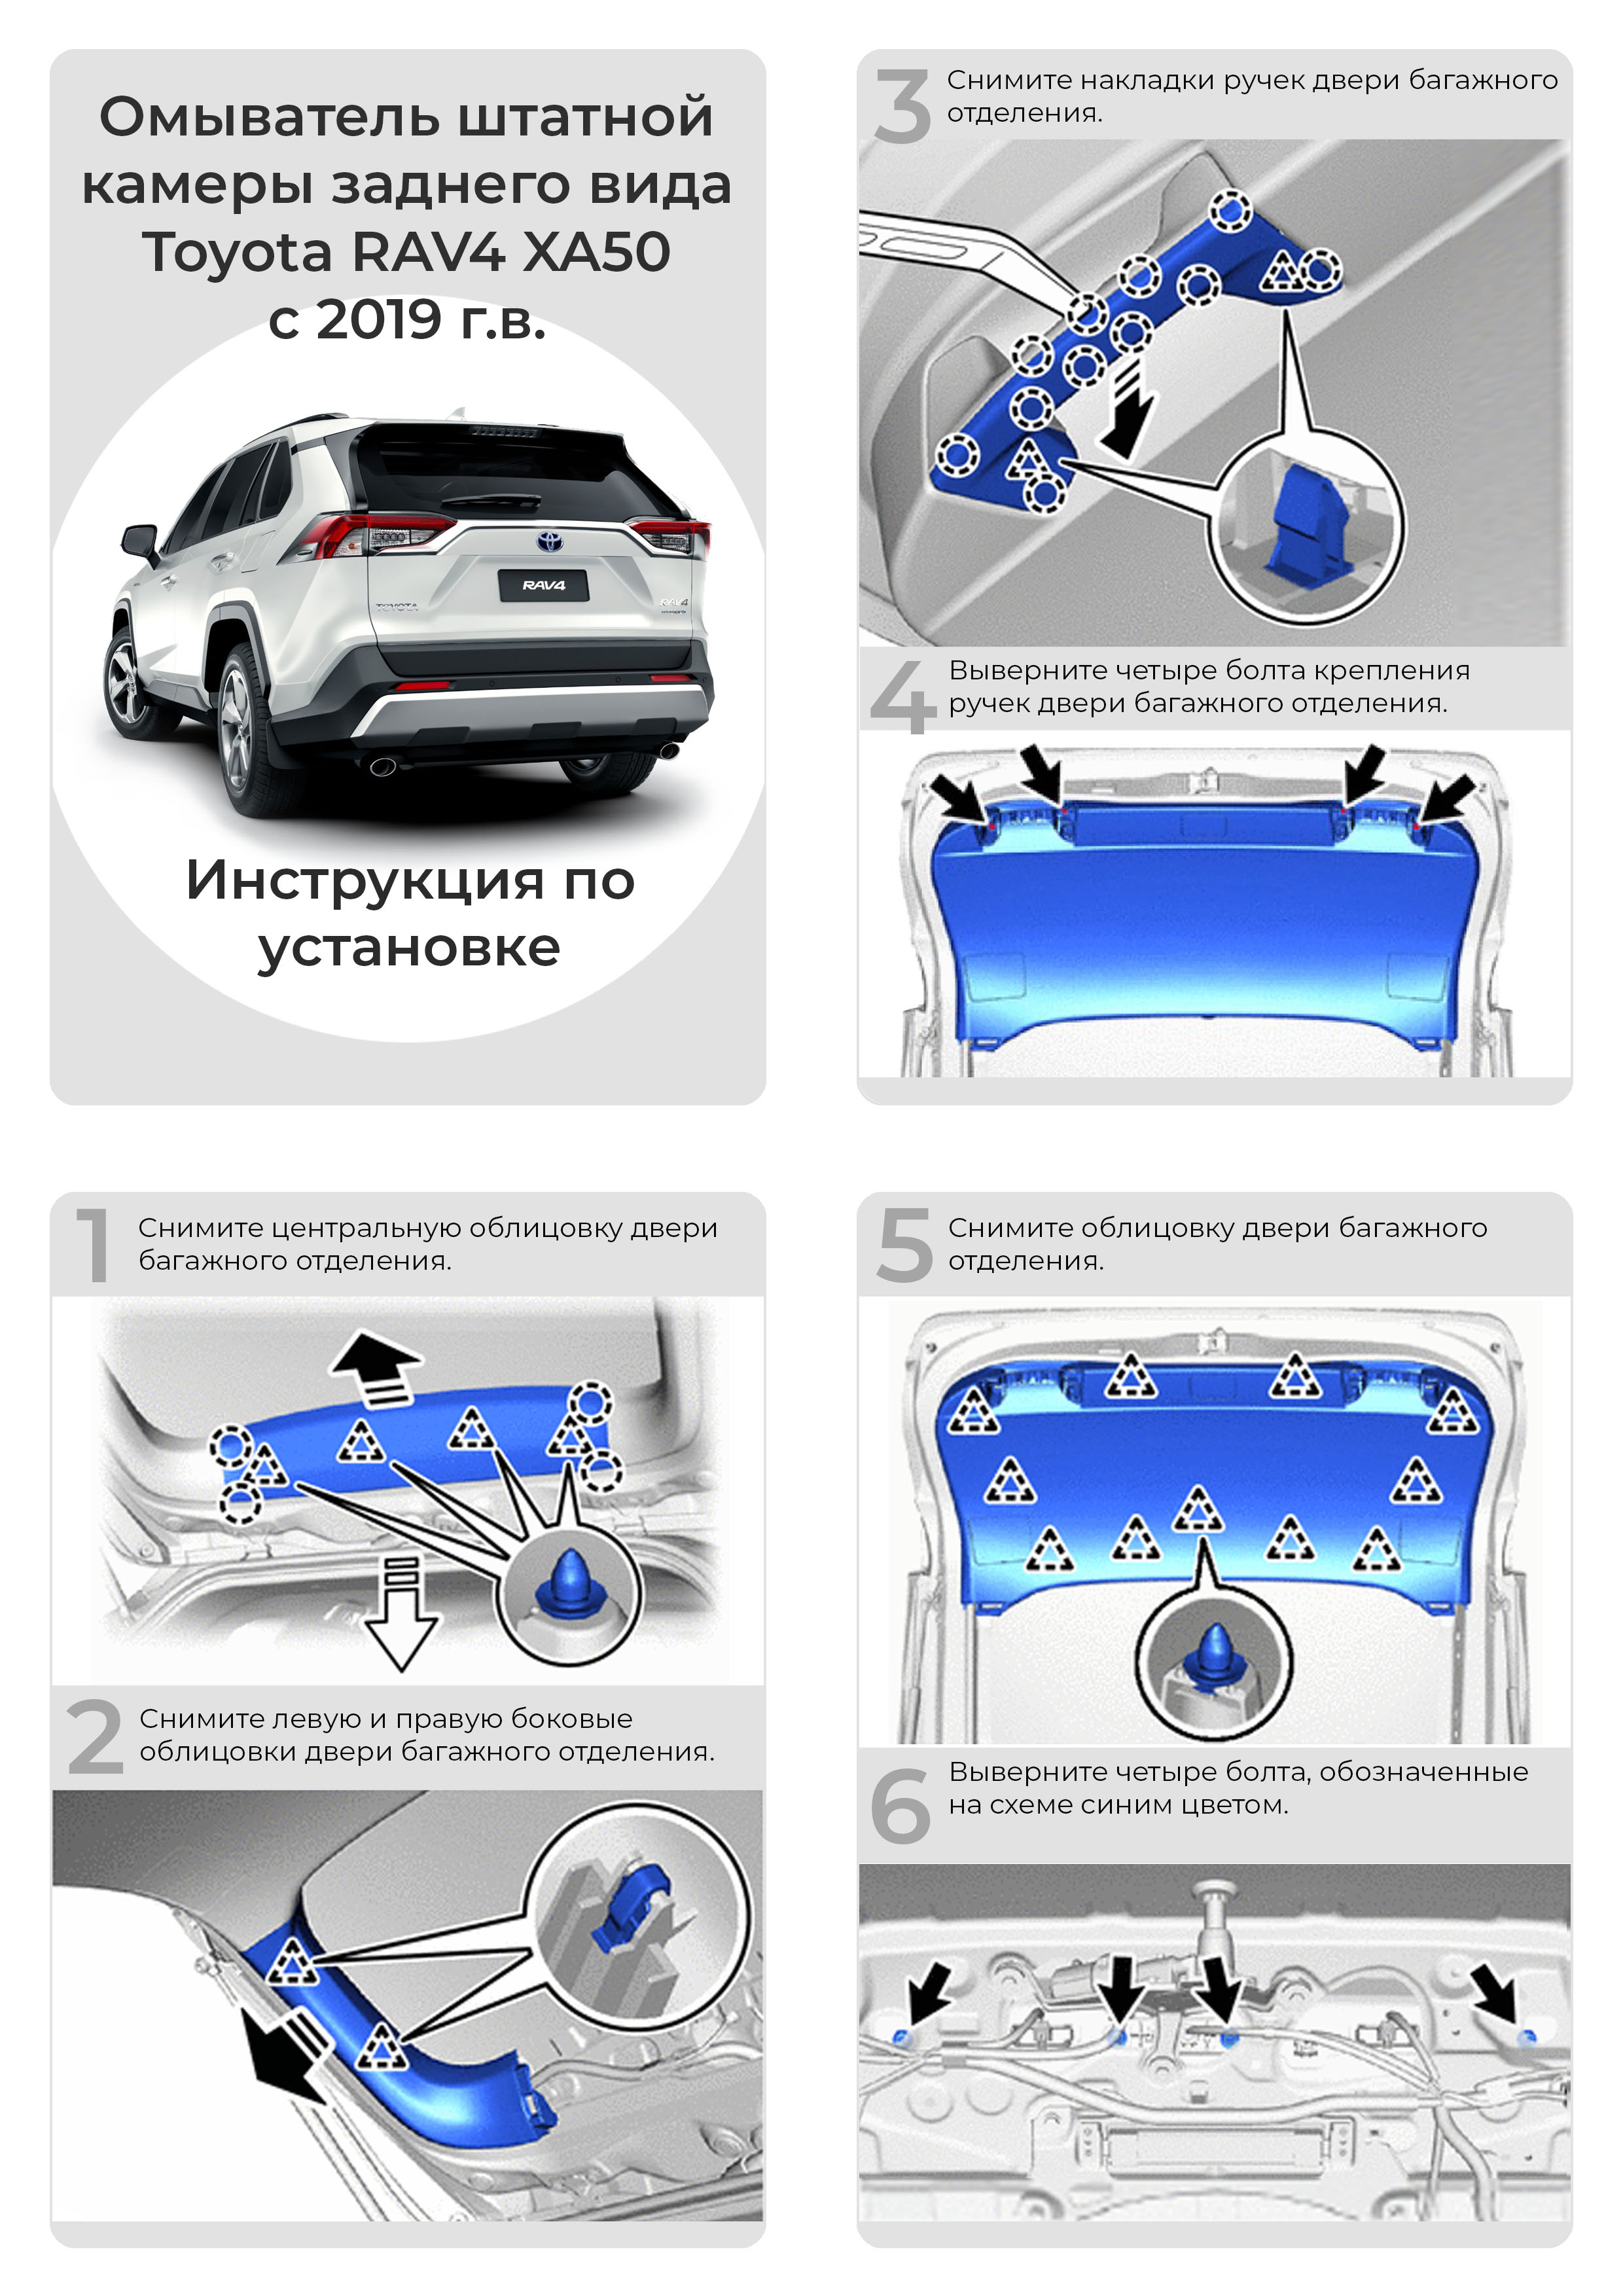 Инструкция по установке омывателя камеры заднего вида для Toyota RAV4